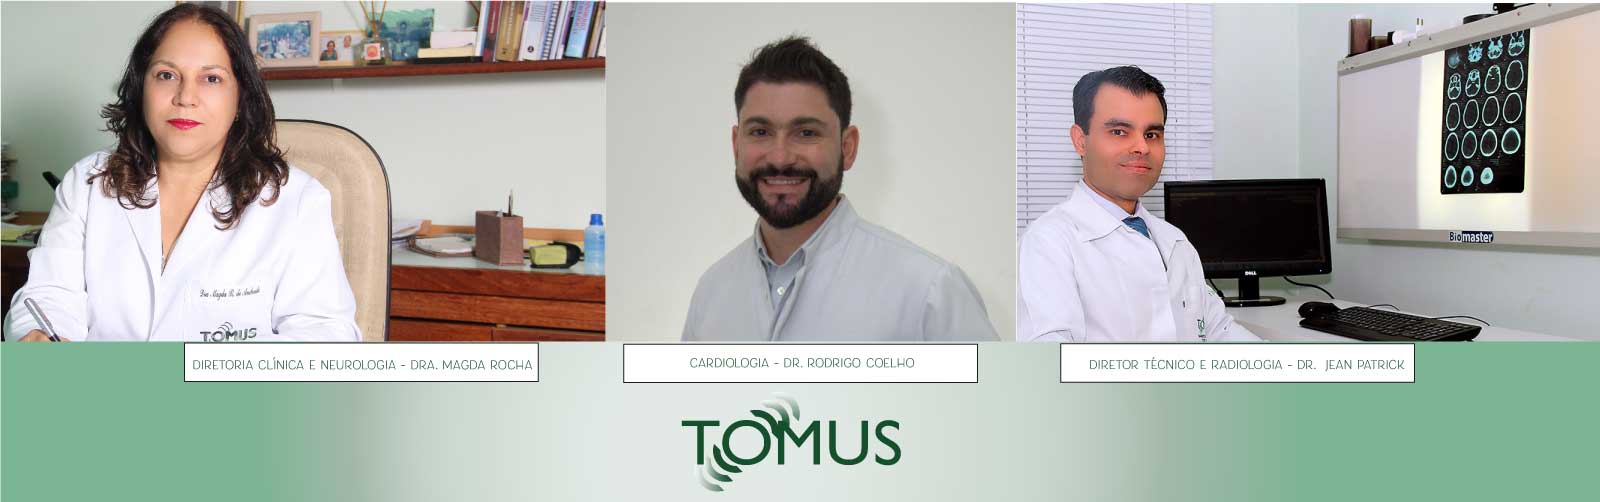 Tomus e Imagem - Consultas especializadas em Guanhães